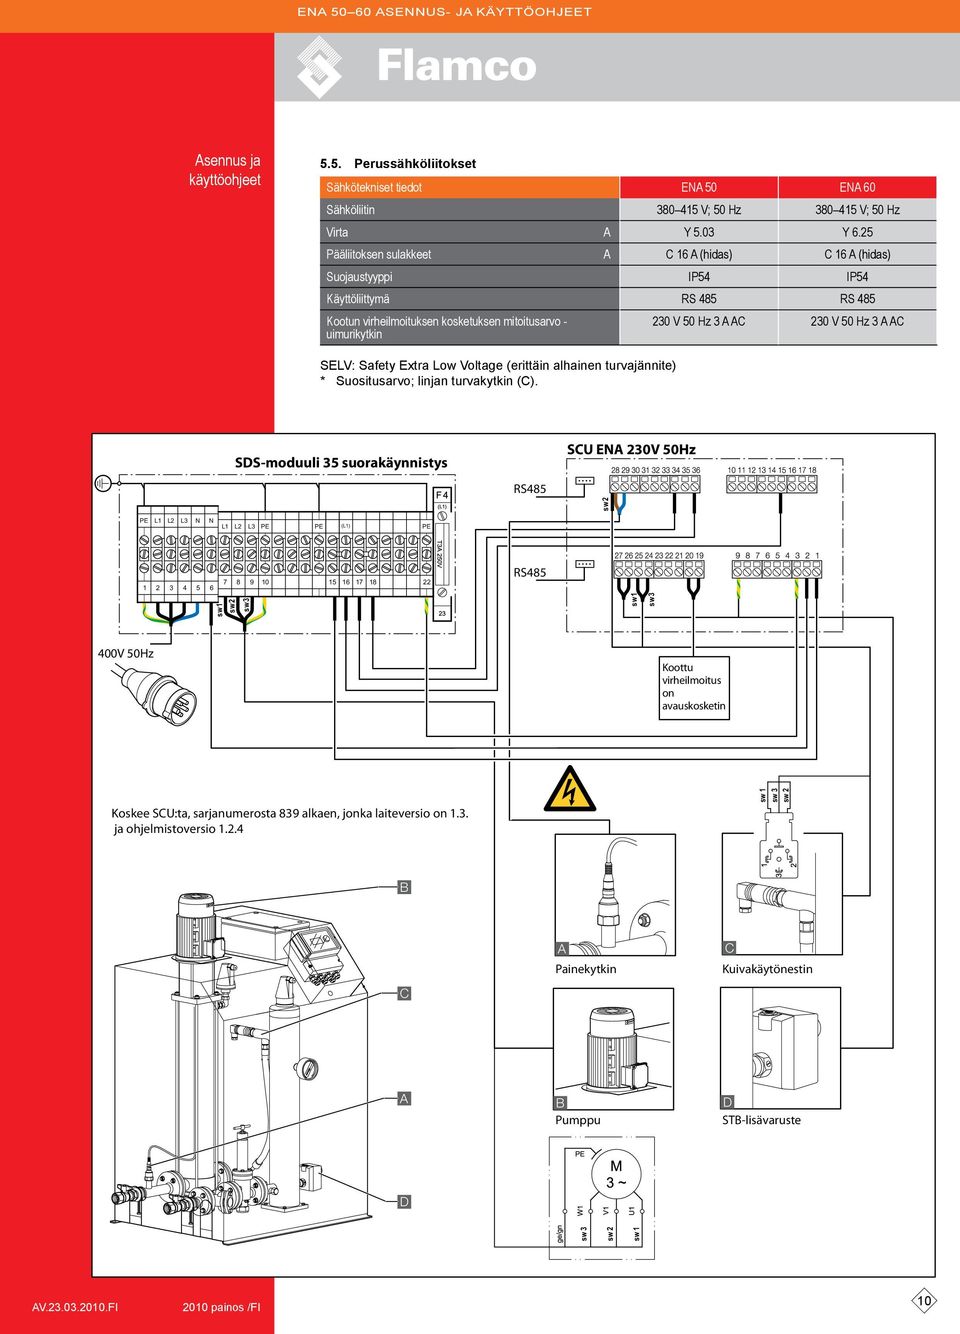 C SELV: Safety Extra Low Voltage (erittäin alhainen turvajännite) * Suositusarvo; linjan turvakytkin (C).